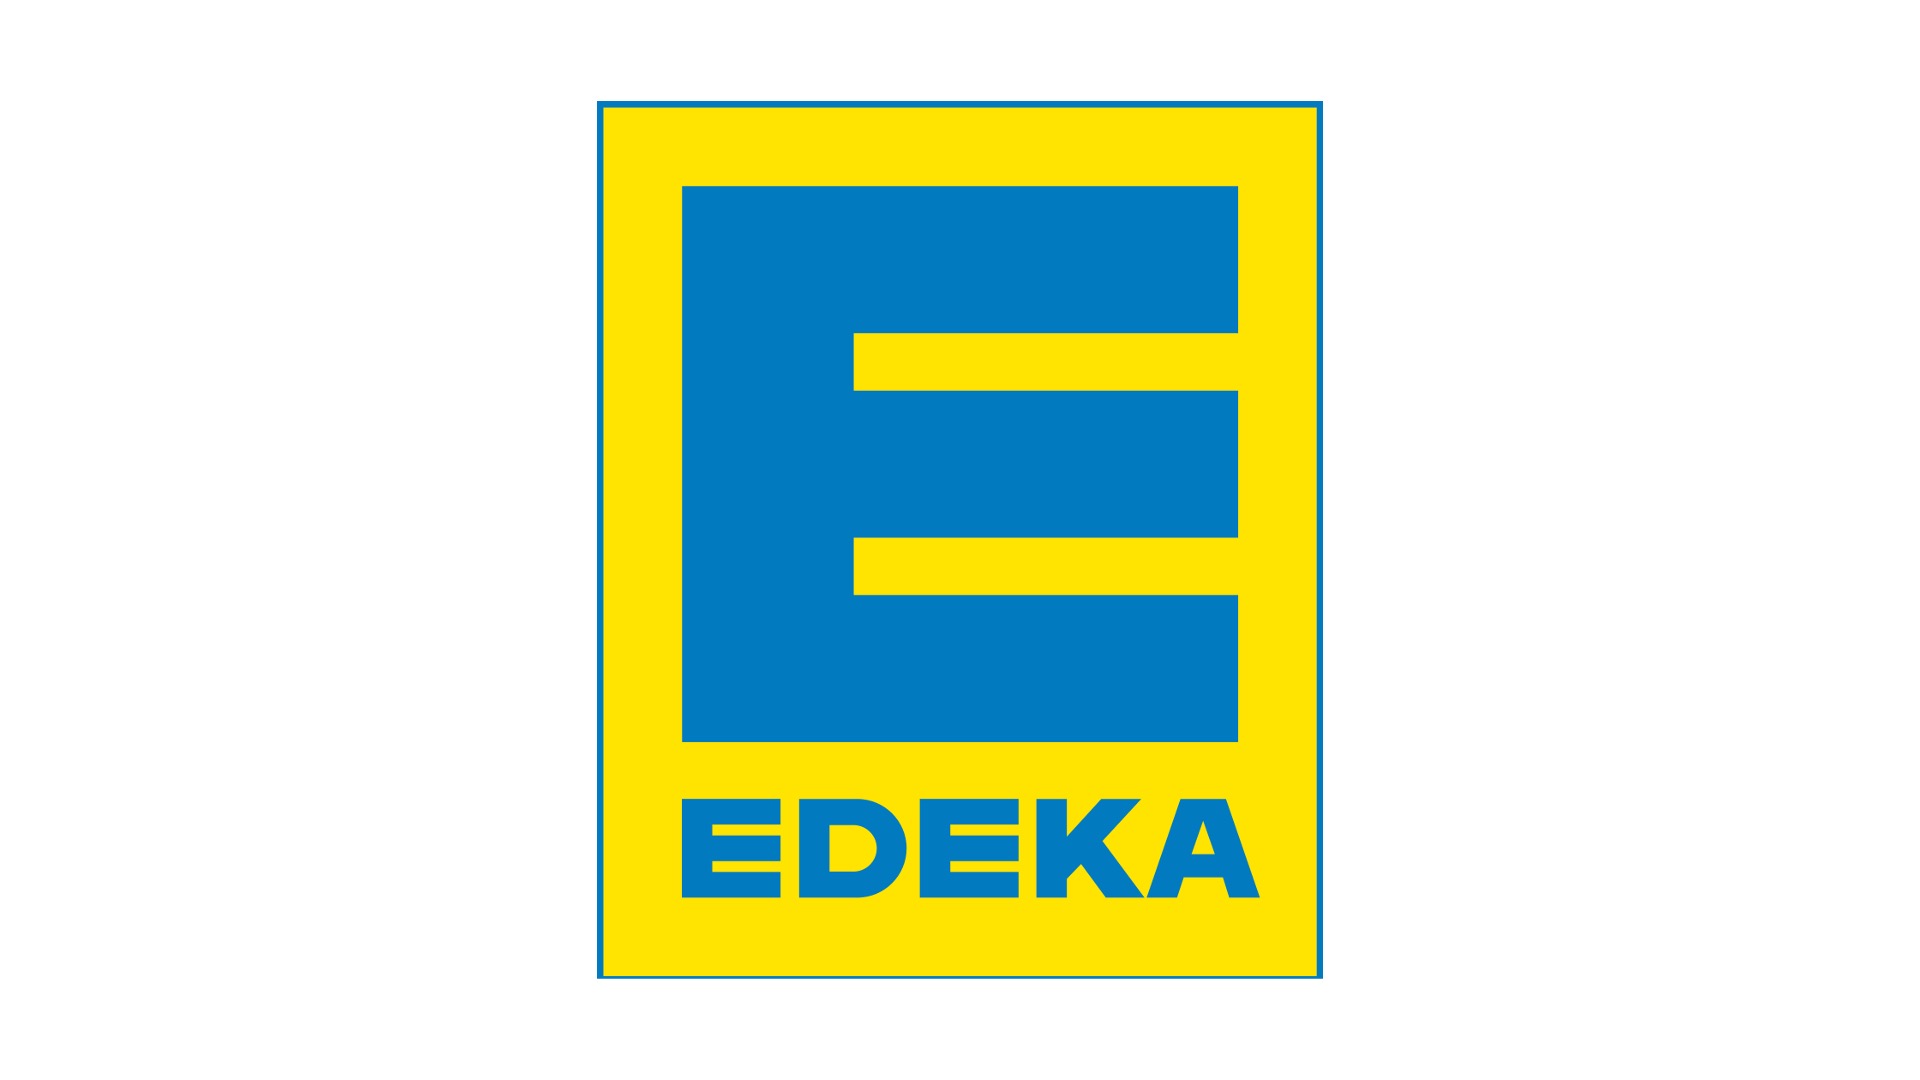 Edeka - Deutschlands größte Supermarktkette mit internationaler Präsenz